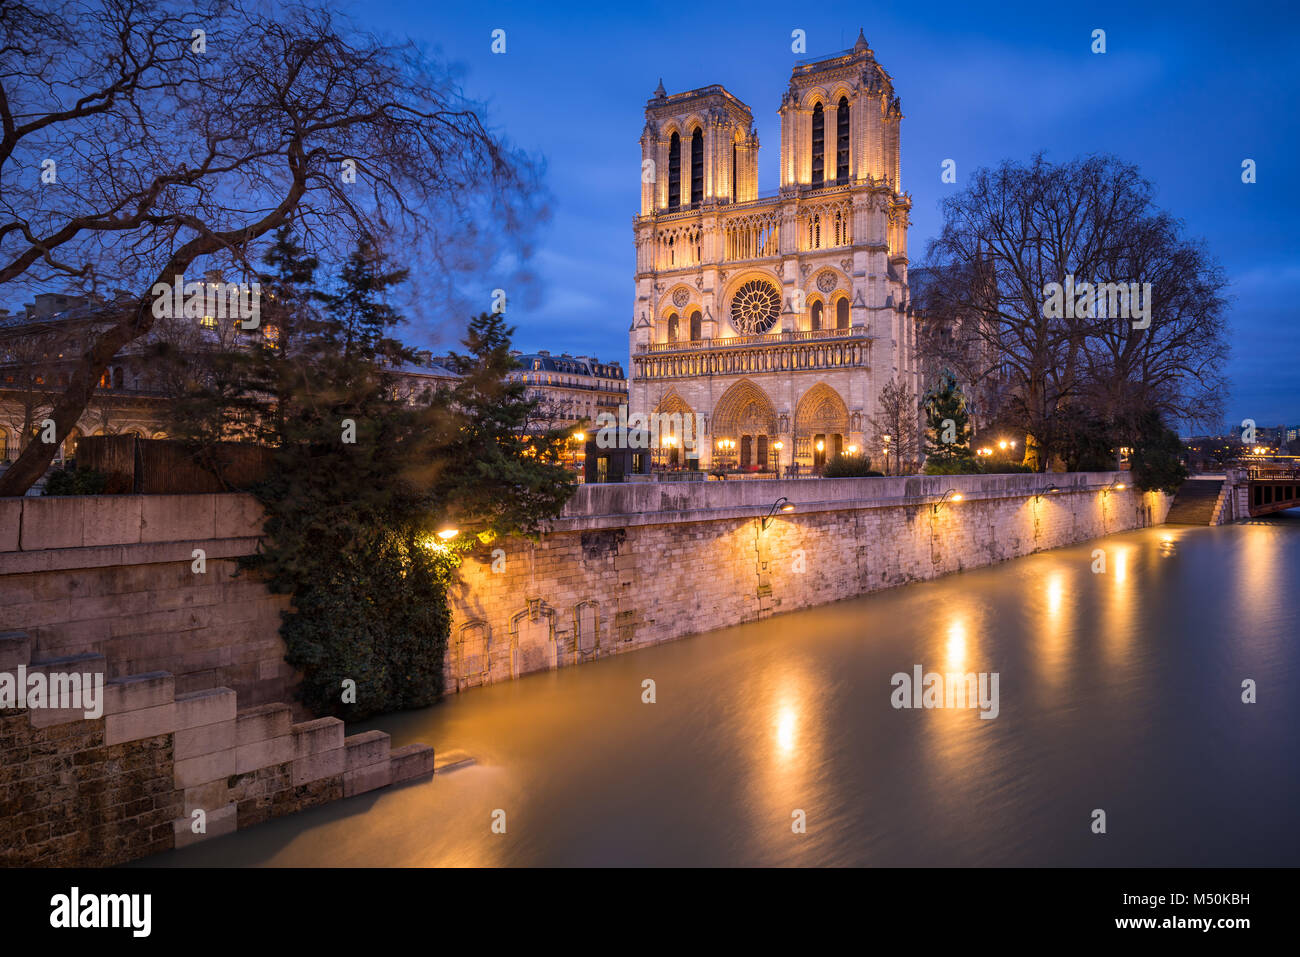 Notre Dame de Paris Catheral at dusk with the overflowing Seine River, 4th Arrondissement, Paris, France Stock Photo